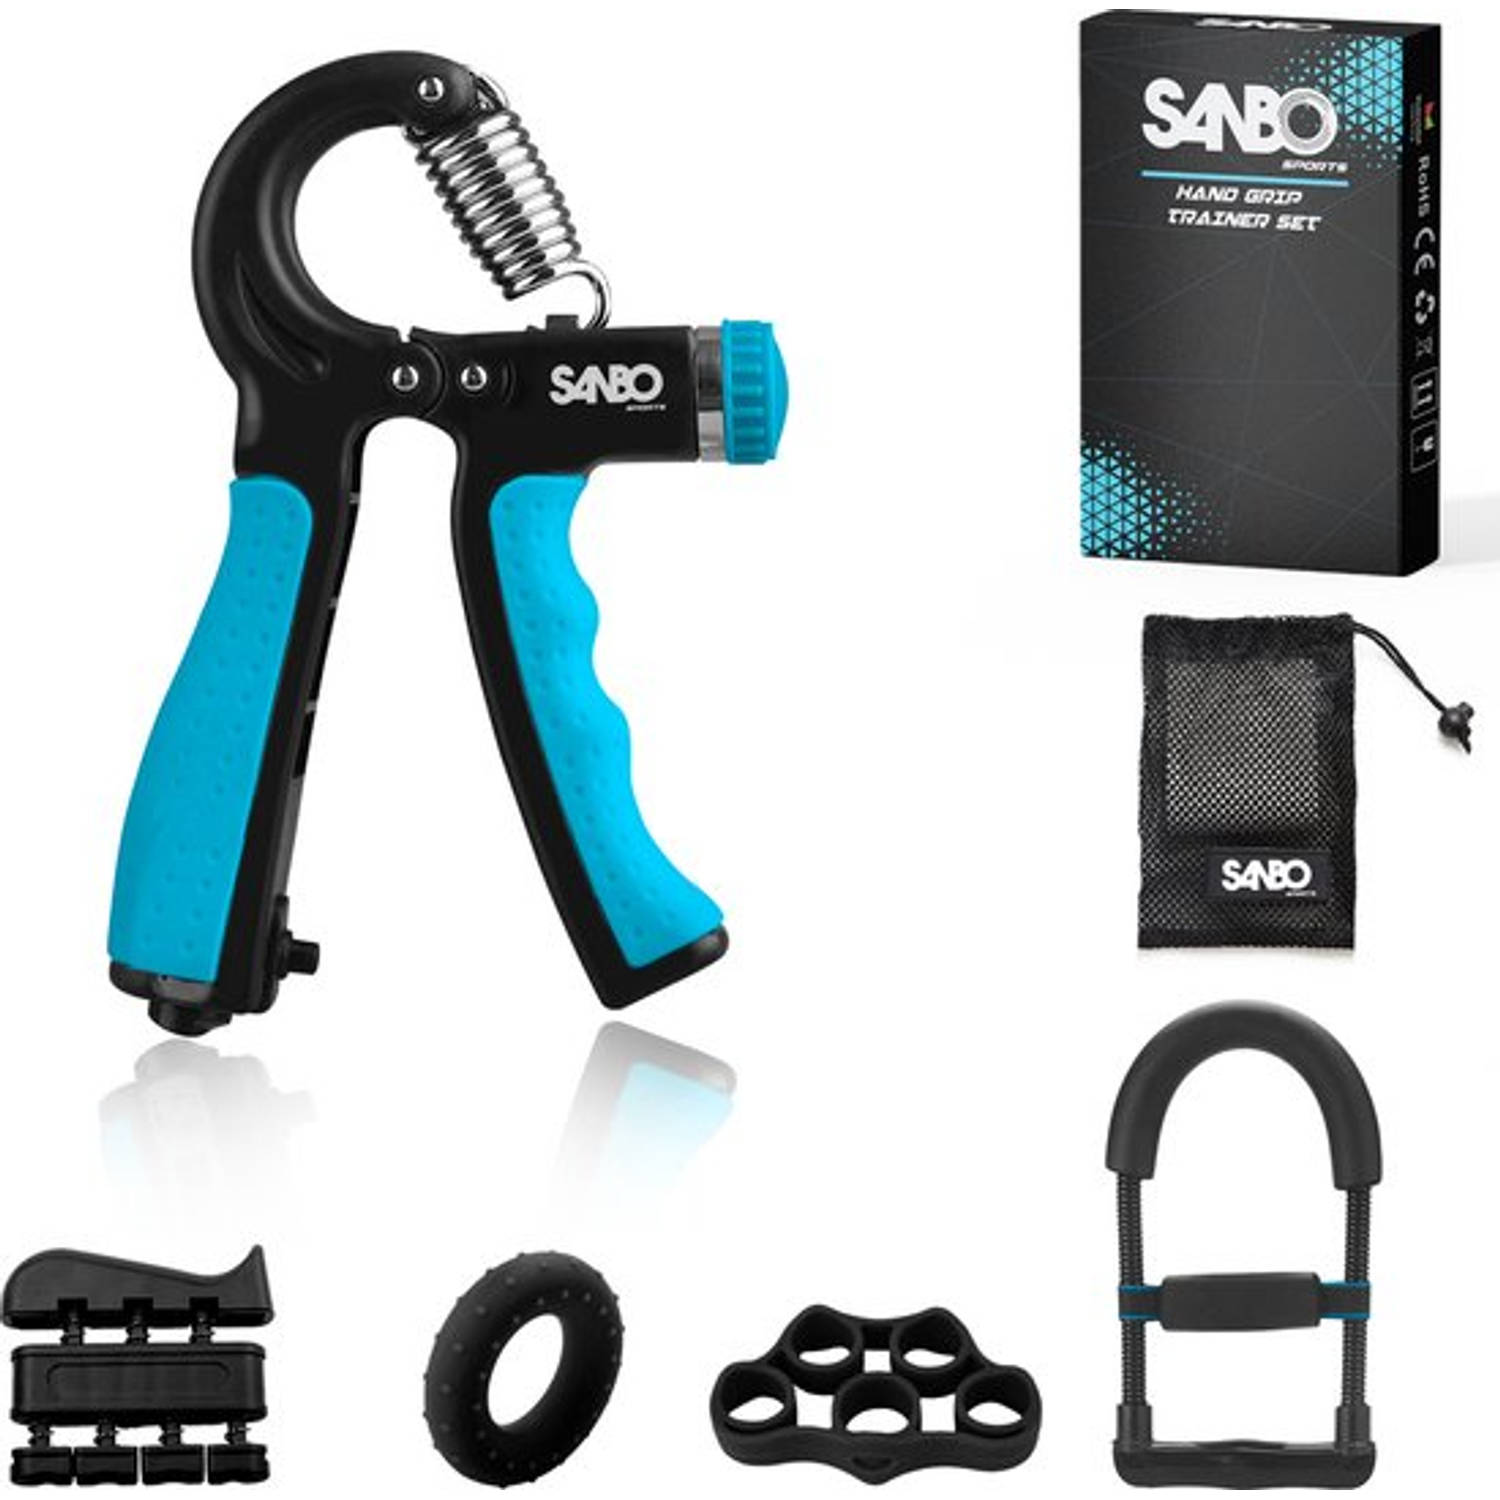 Sanbo Fitness Handtrainer Set Incl. Onderarm Trainer Handknijper Vingertrainer